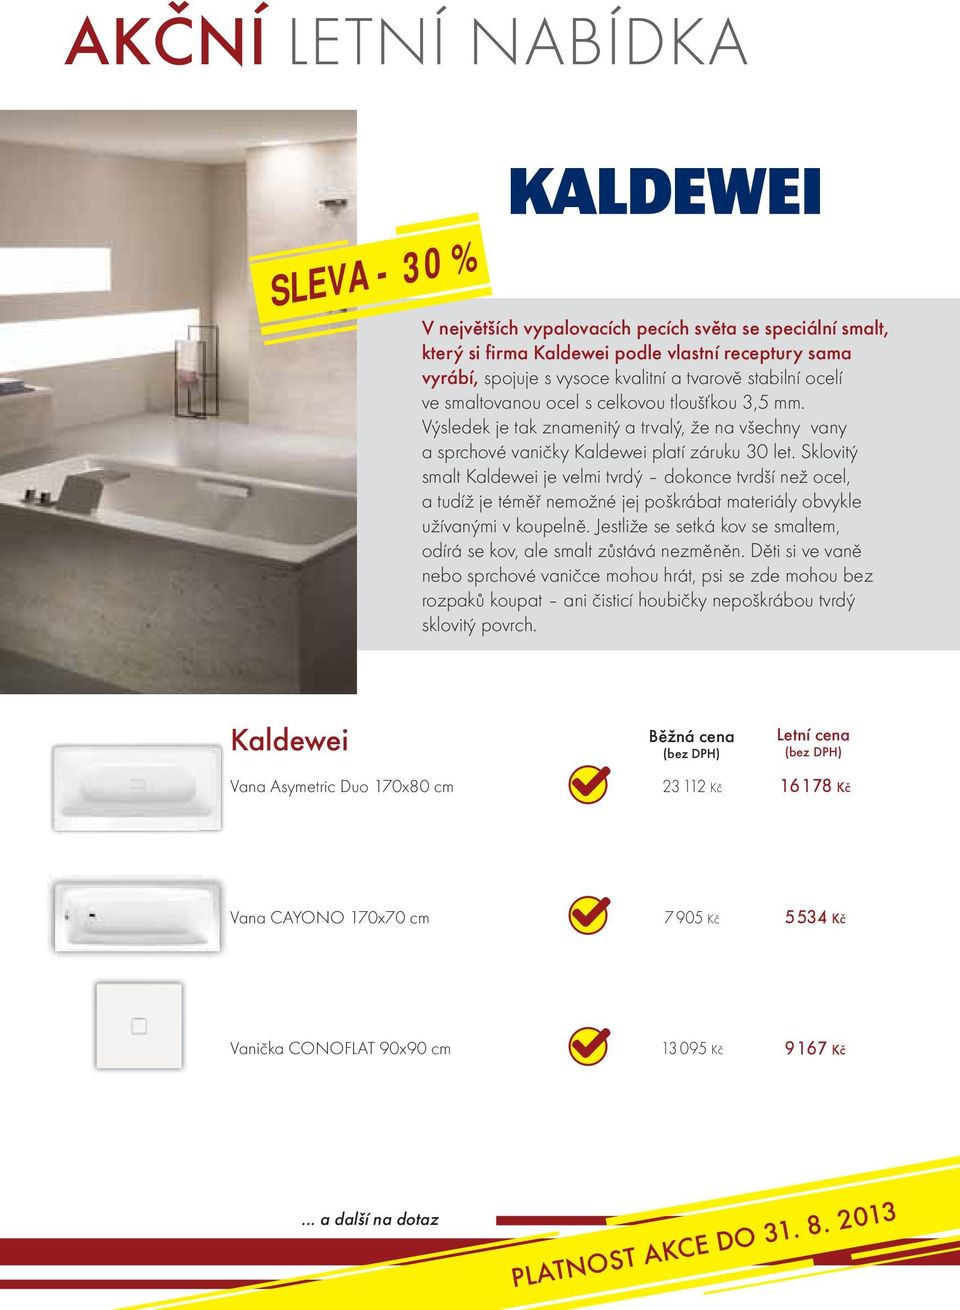 Sklovitý smalt Kaldewei je velmi tvrdý dokonce tvrdší než ocel, a tudíž je téměř nemožné jej poškrábat materiály obvykle užívanými v koupelně.